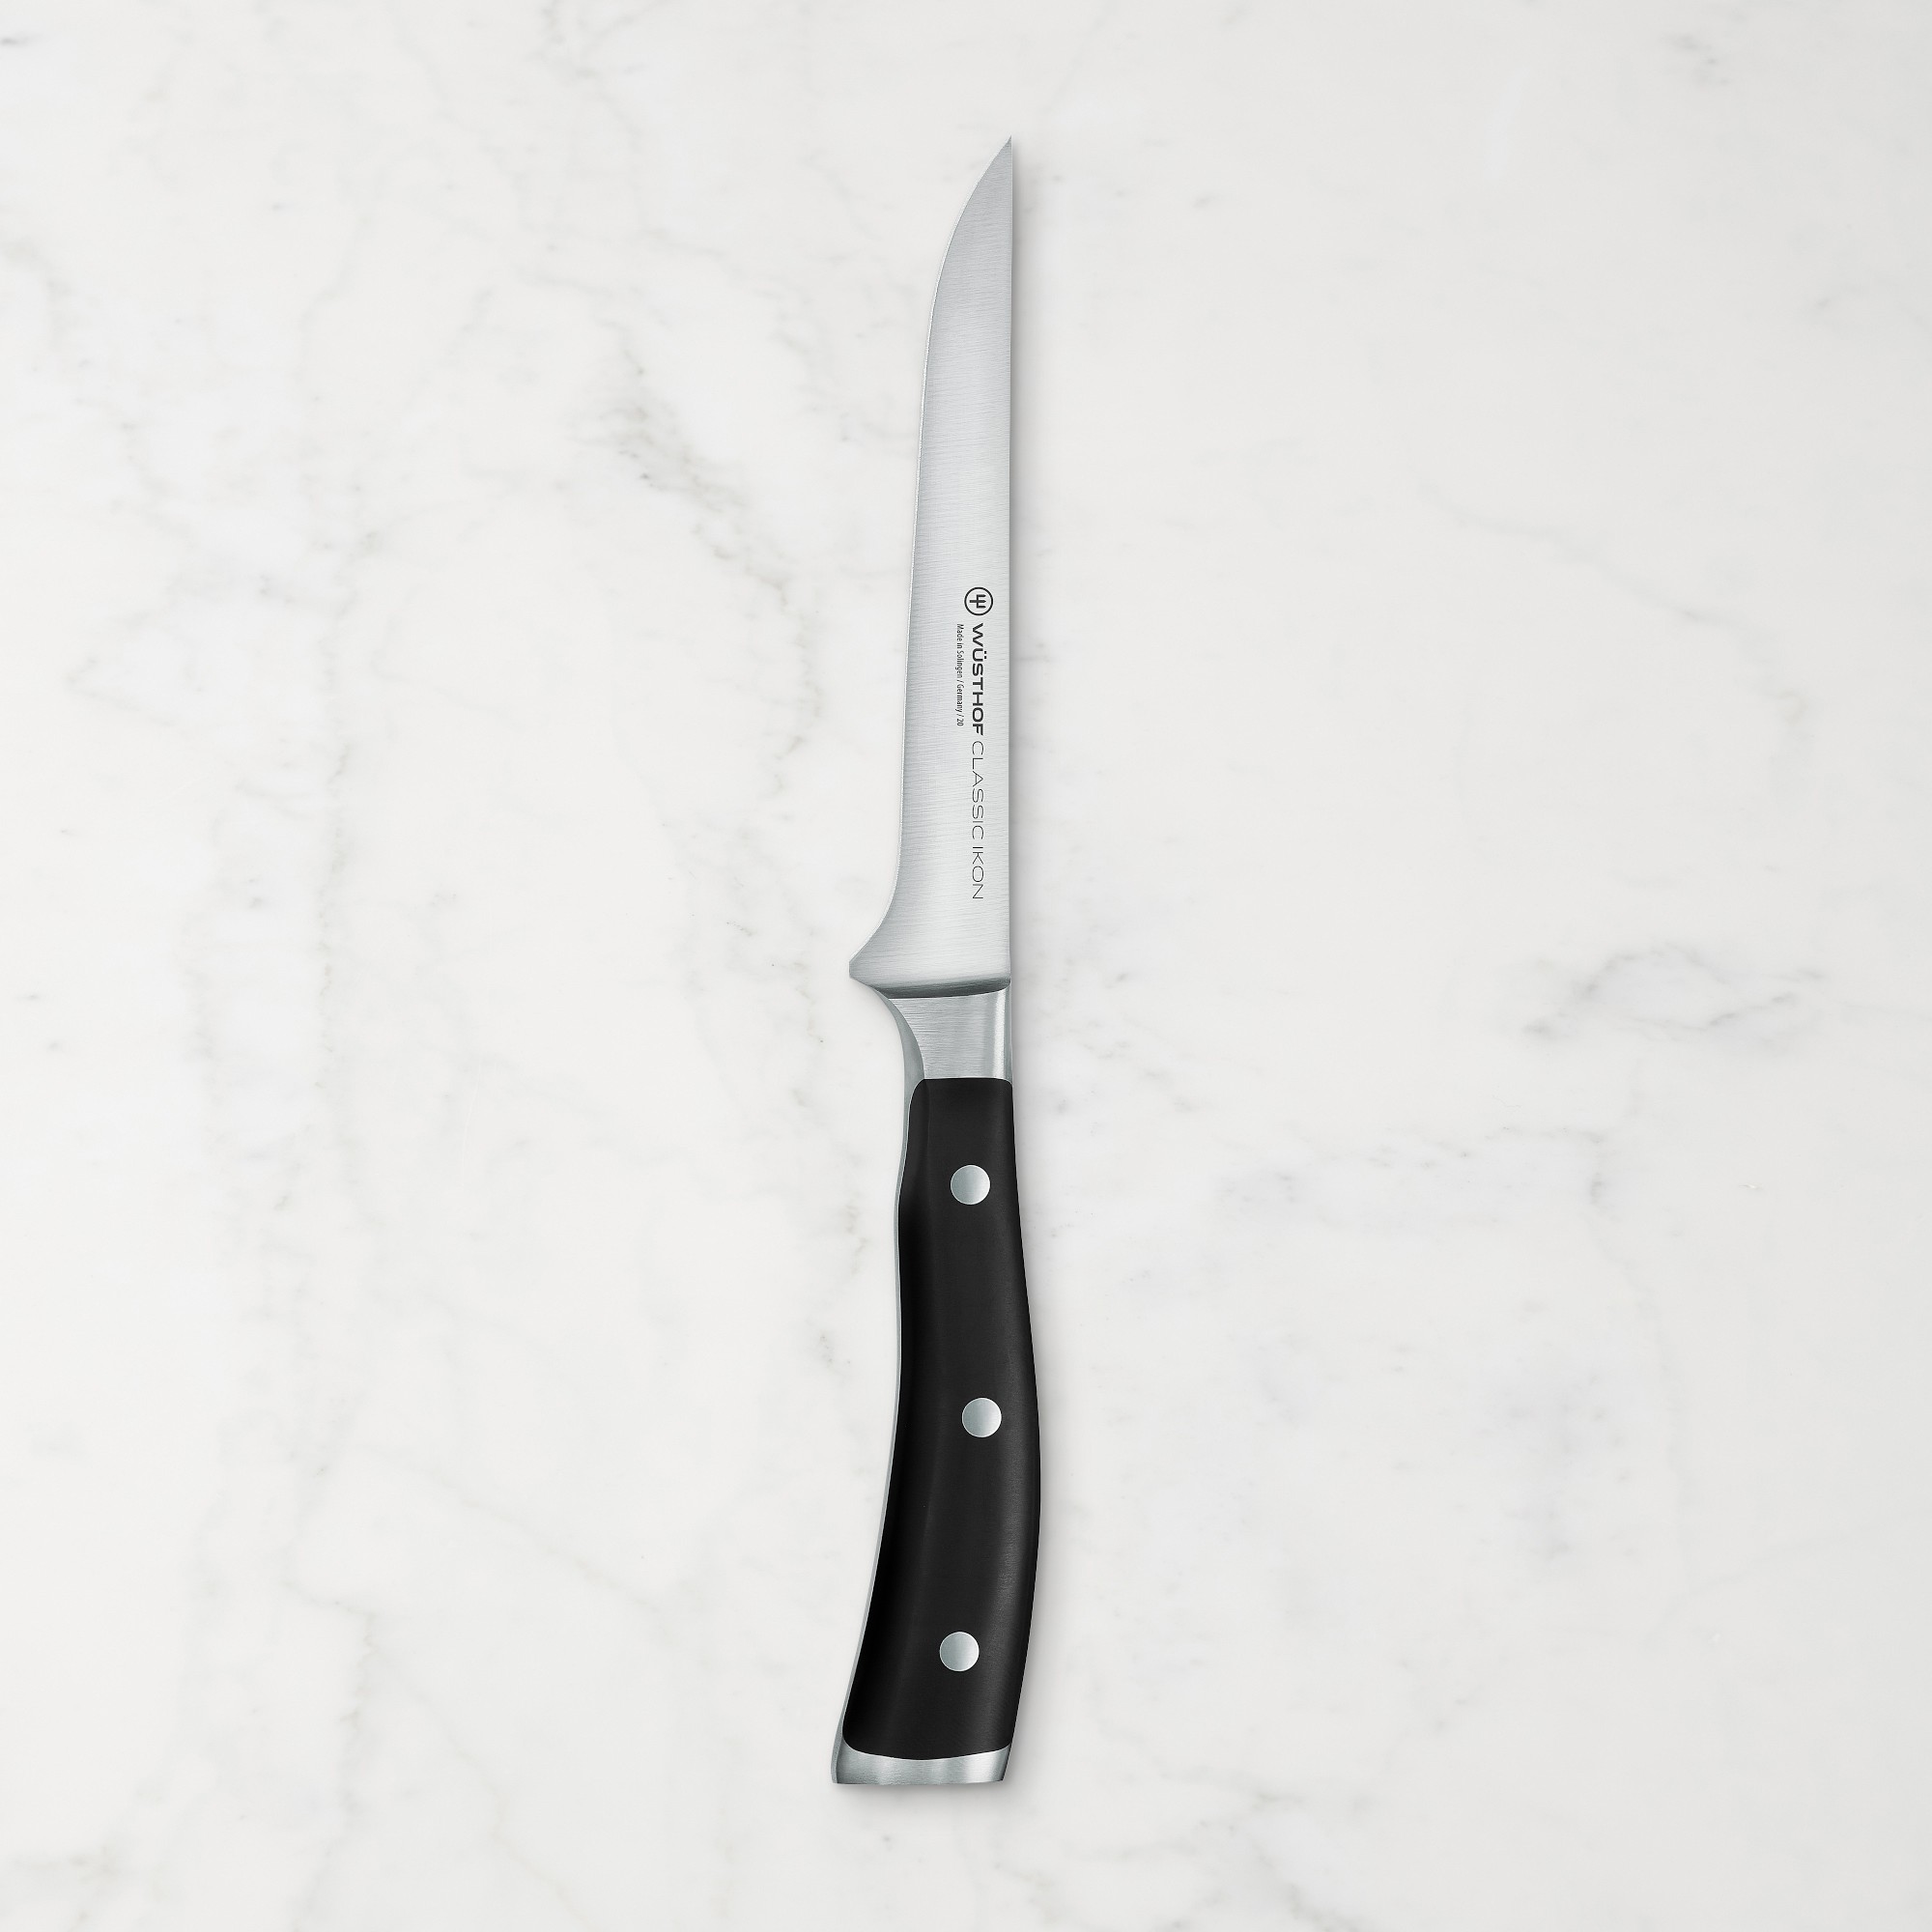 Wüsthof Classic Ikon Boning Knife, 5 1/2"